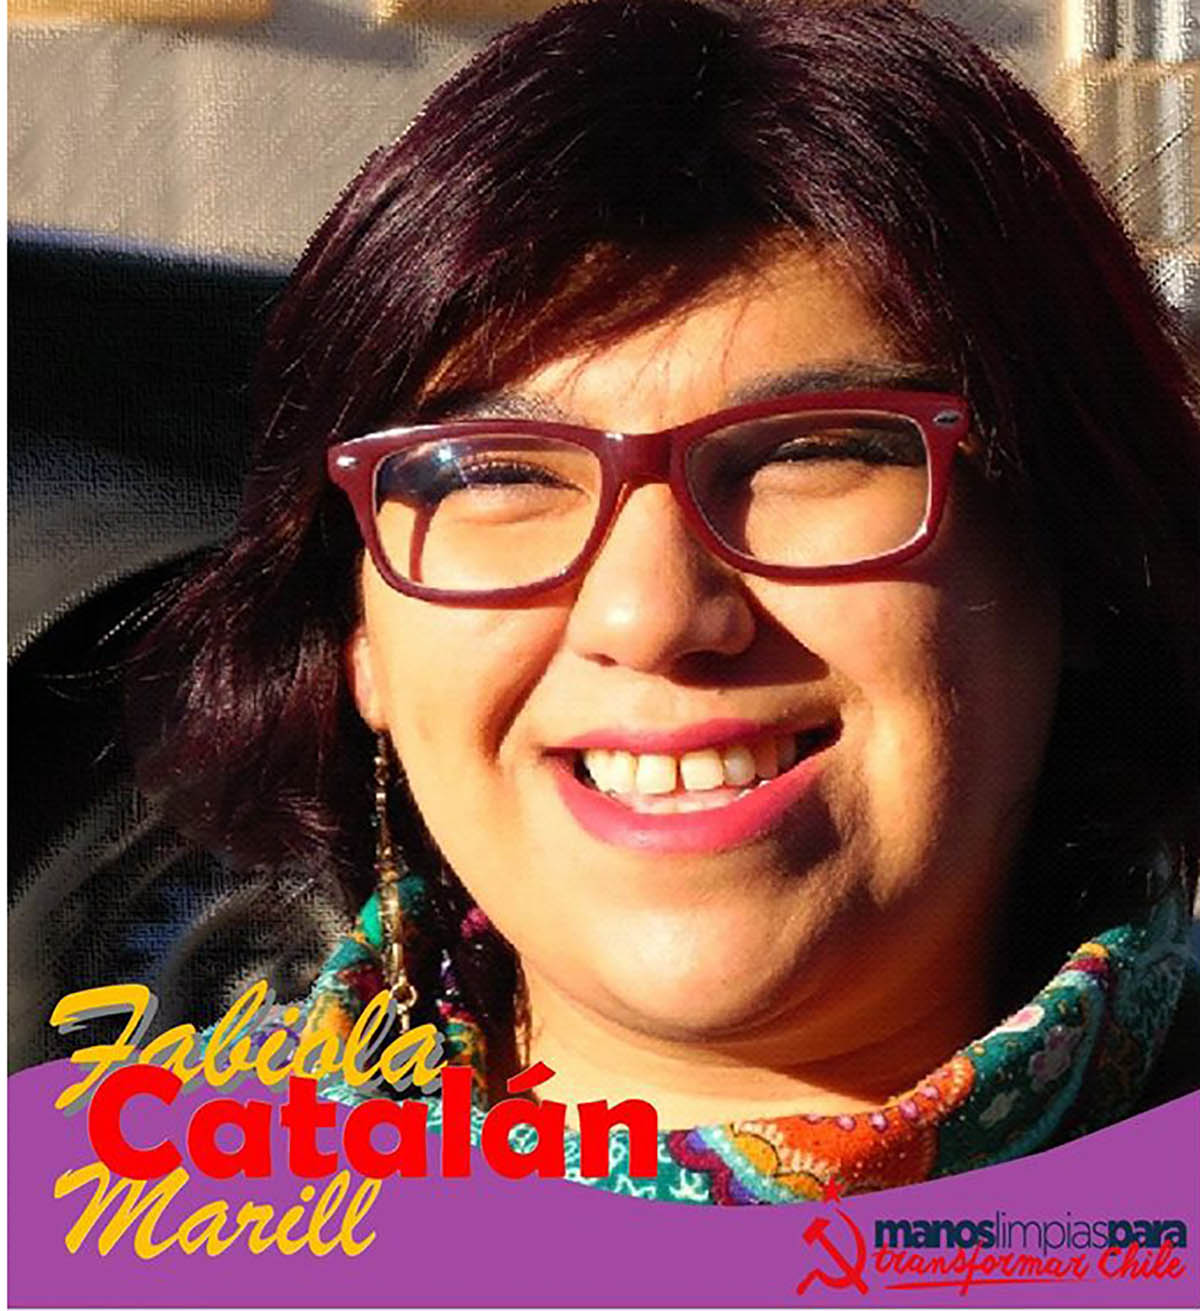 Candidata a concejala, Fabiola Catalán, “La despenalización del aborto no tiene que ver con la moral ni las buenas costumbres, tiene que ver con la salud pública y la dignidad humana”